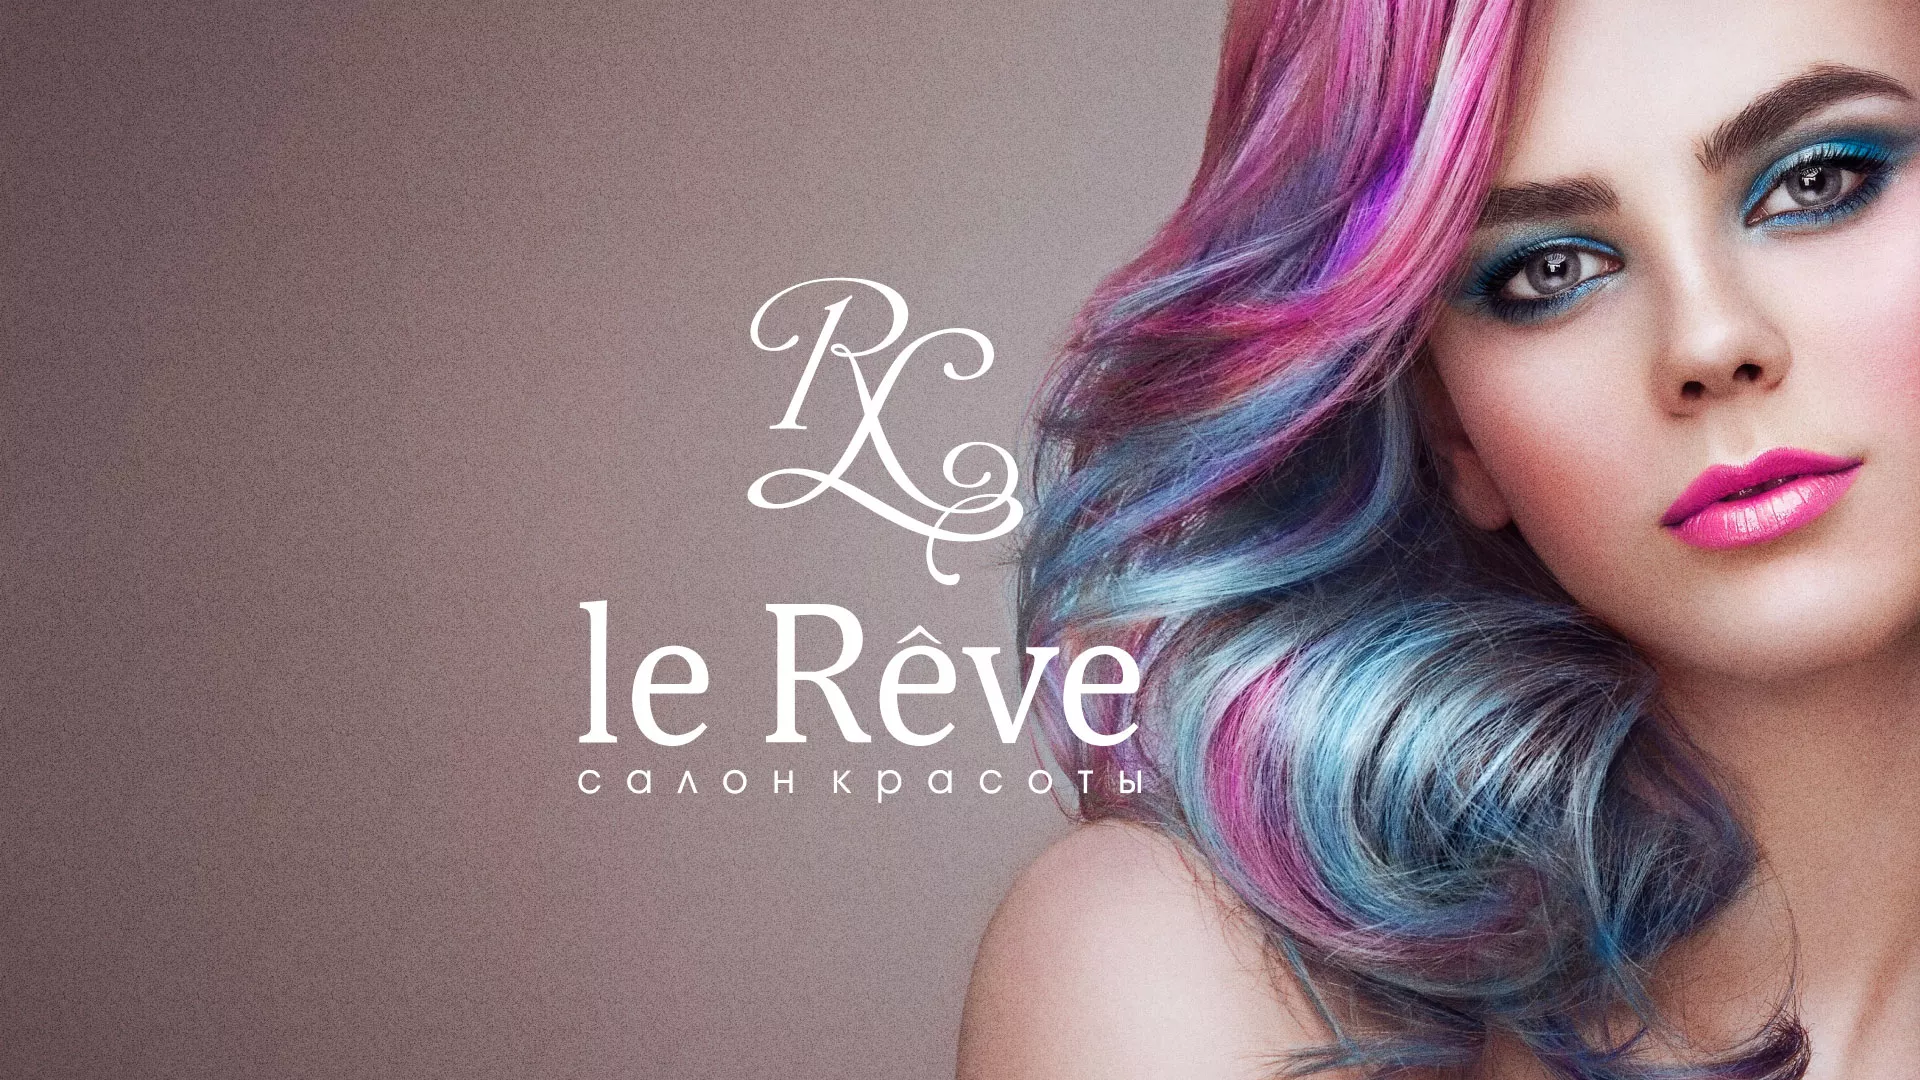 Создание сайта для салона красоты «Le Reve» в Болгаре